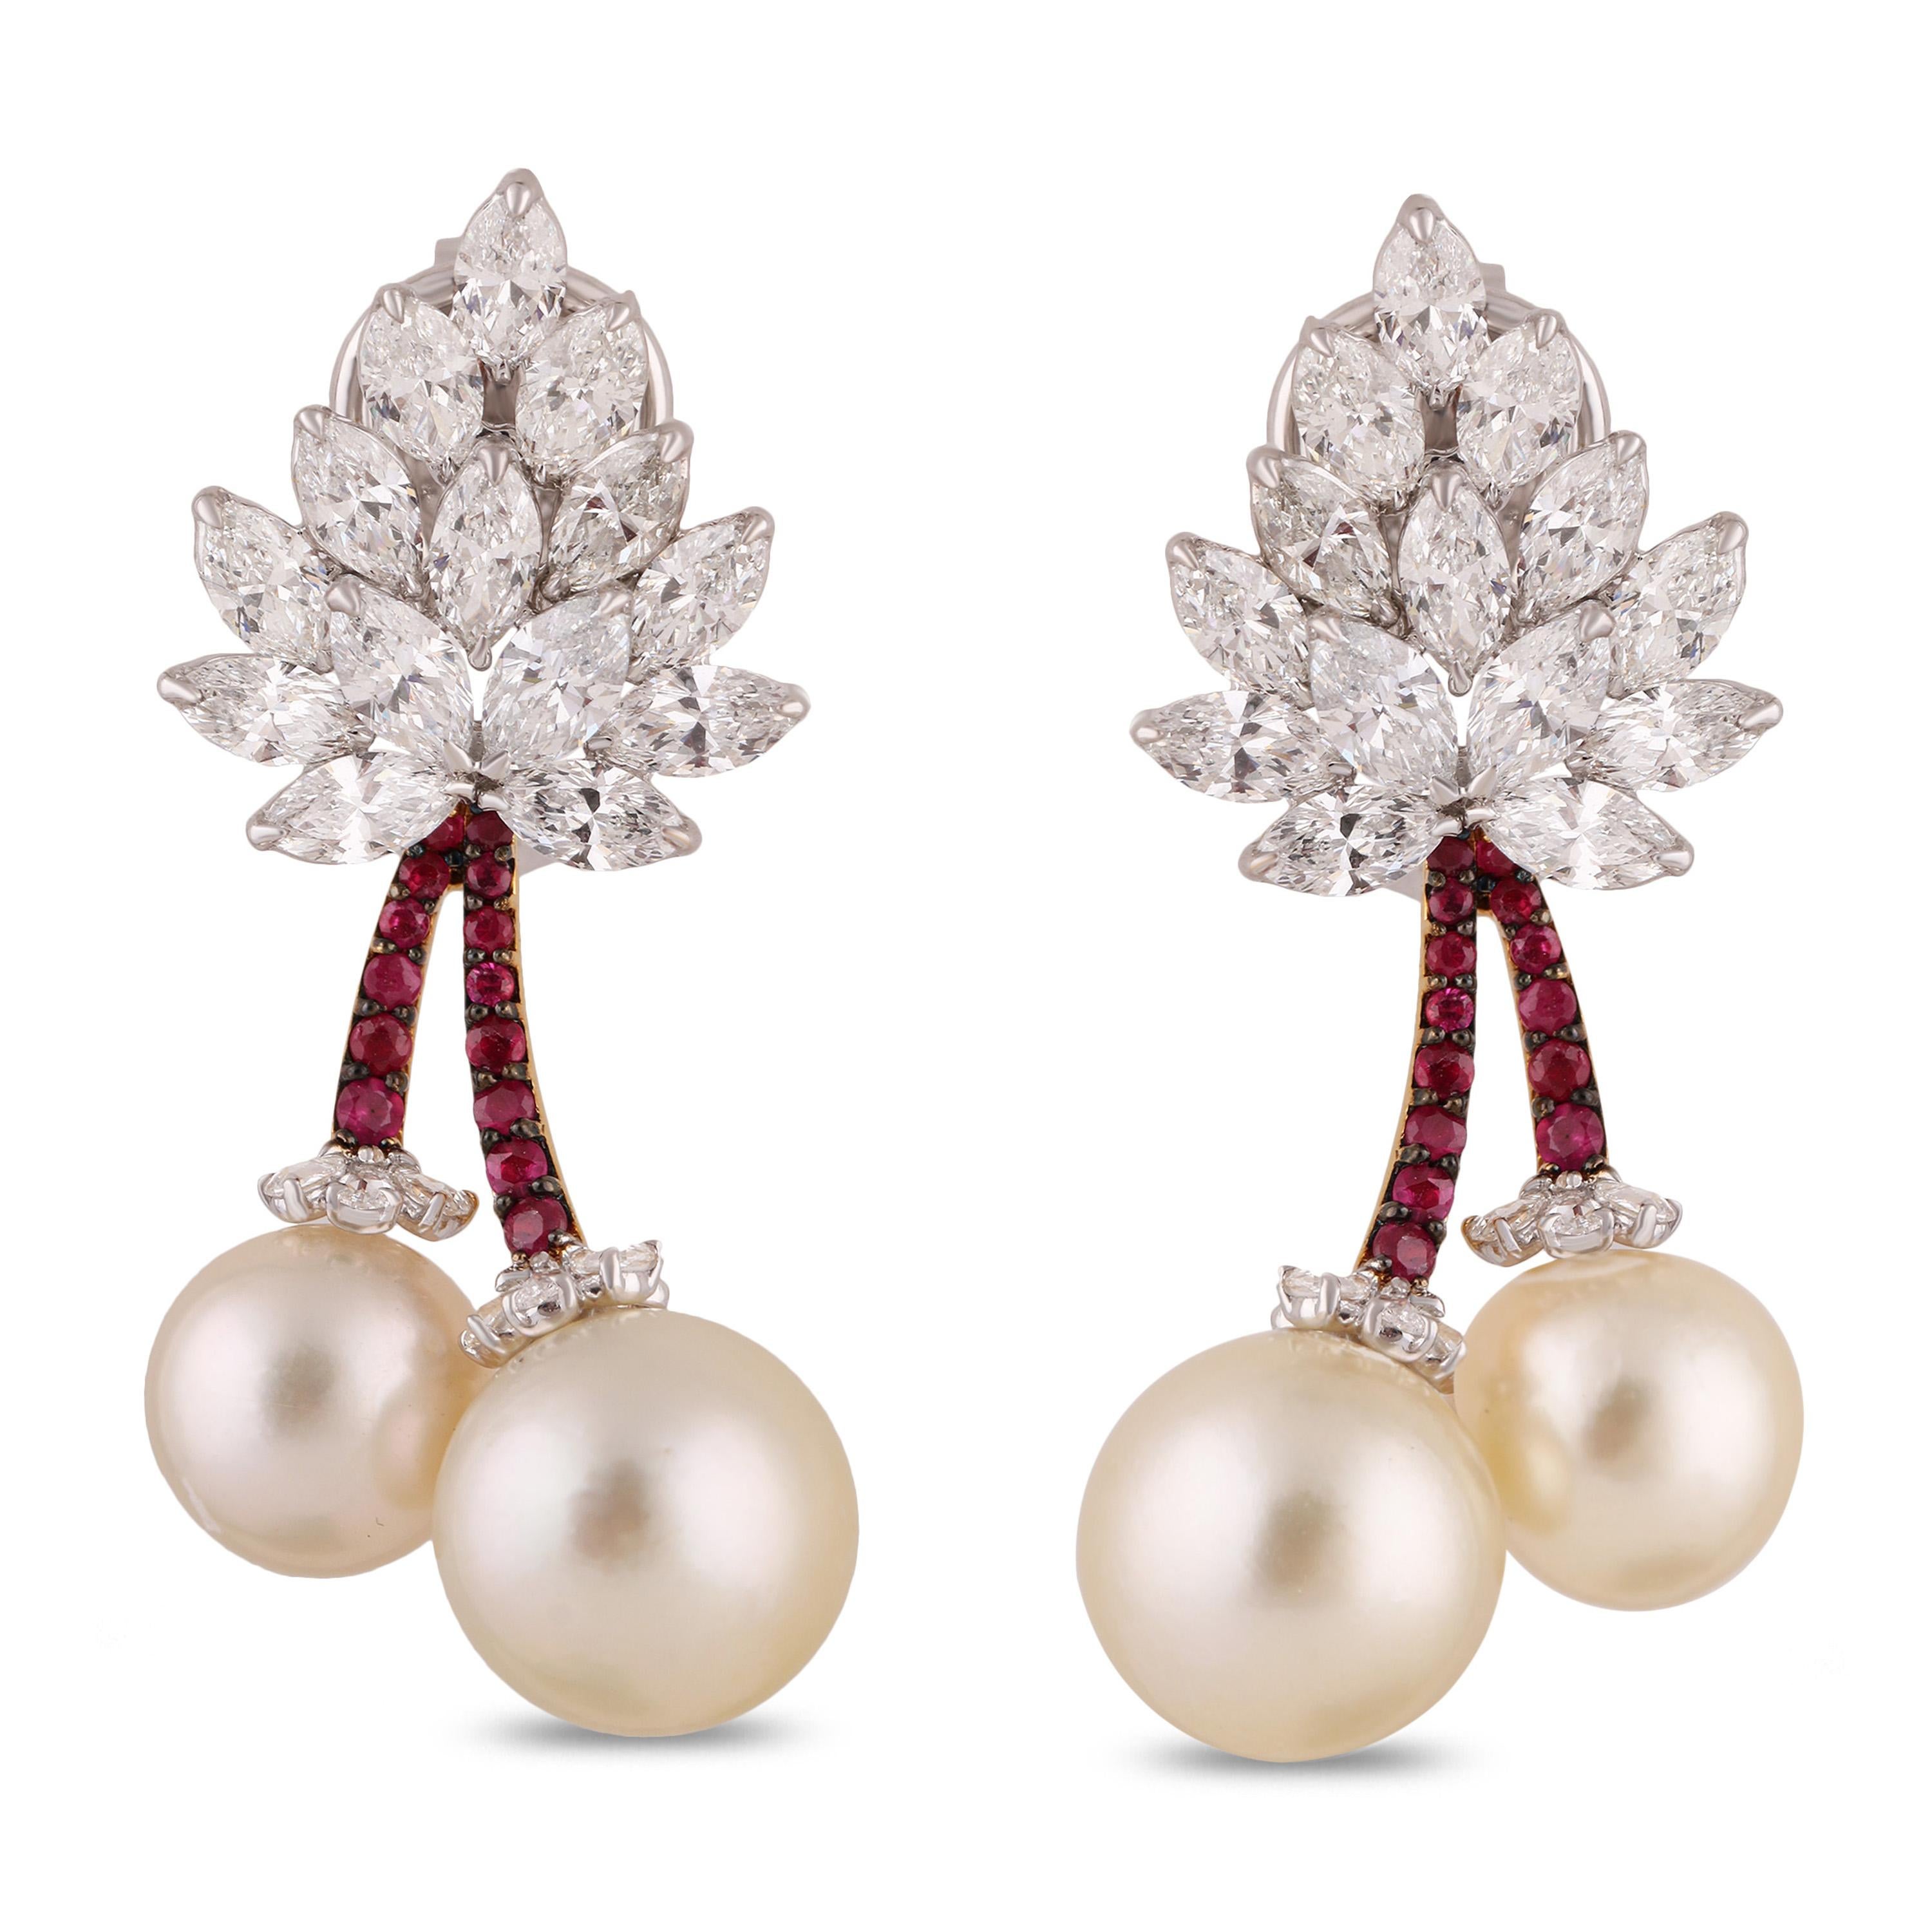 Modern Studio Rêves Cherry Blossom Diamond Stud Earrings in 18 Karat Gold For Sale